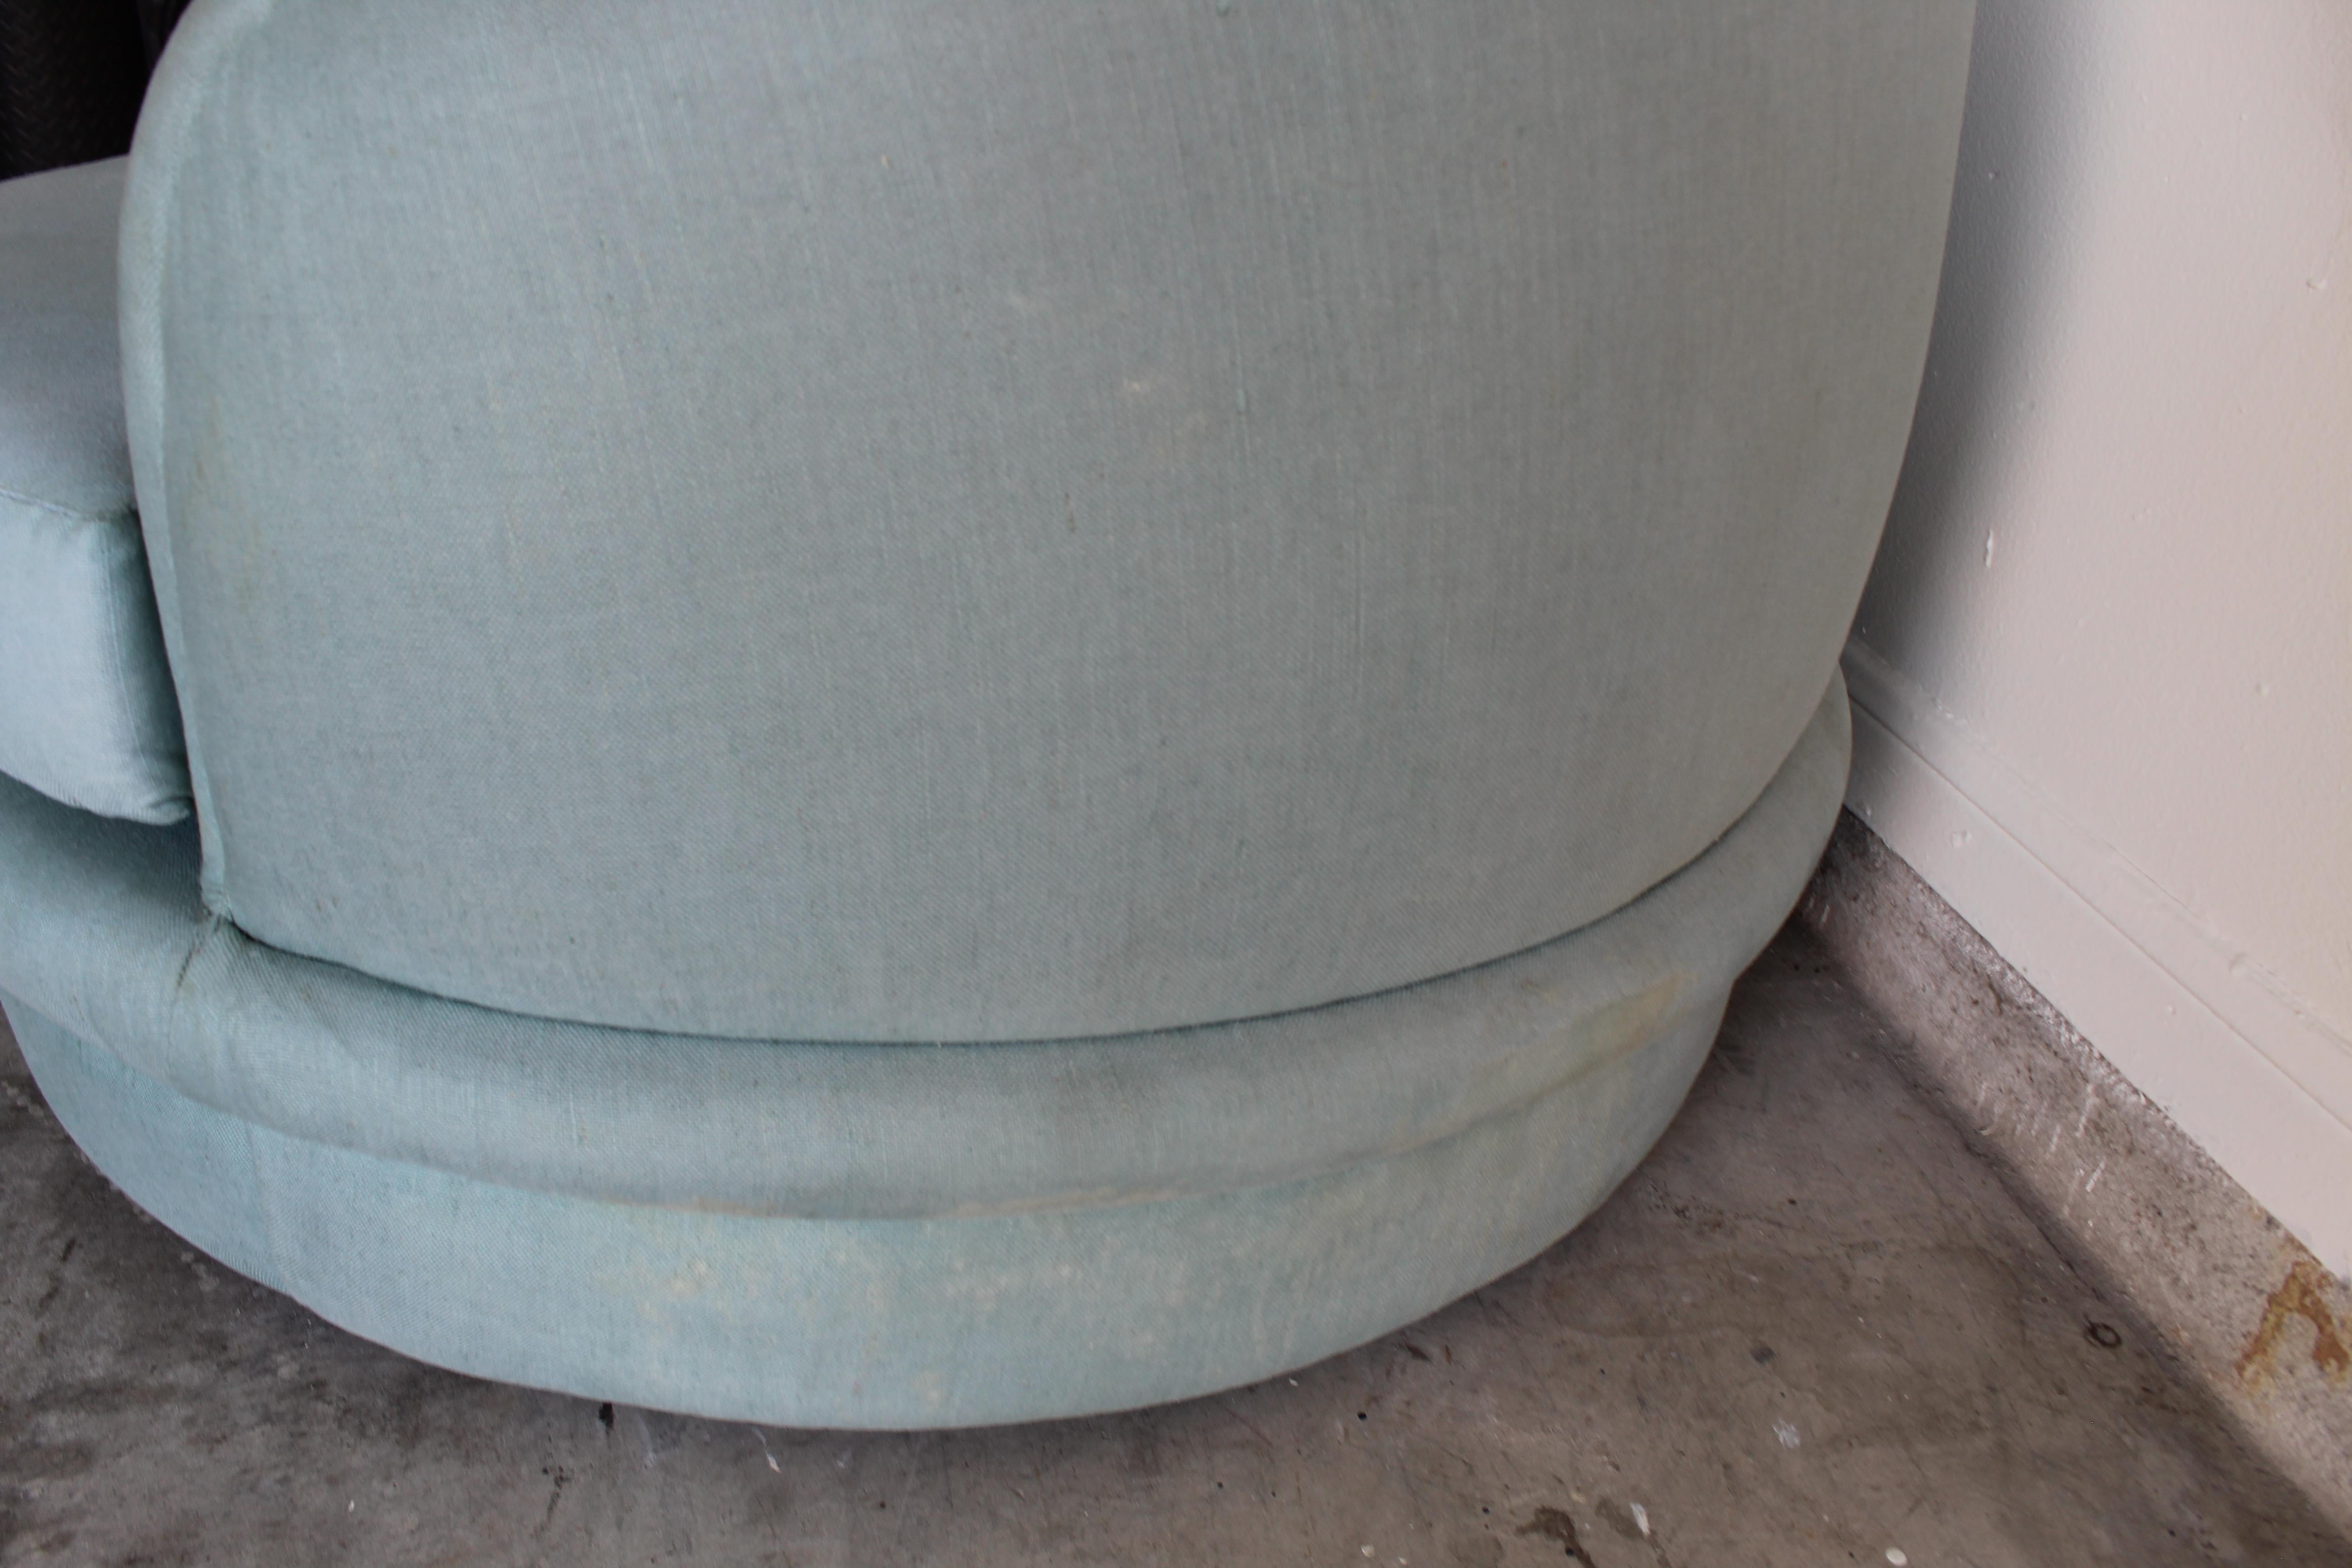 Ein erstaunliches Paar babyblauer postmoderner gebogener Cloud-Sofas. Diese Sofas wurden Mitte der 1990er Jahre nach Maß gefertigt. Das niedrige Profil und die epischen Verzierungen ähneln dem Vladimir Kagan Cloud/Kidney-Sofa. Sobald es neu